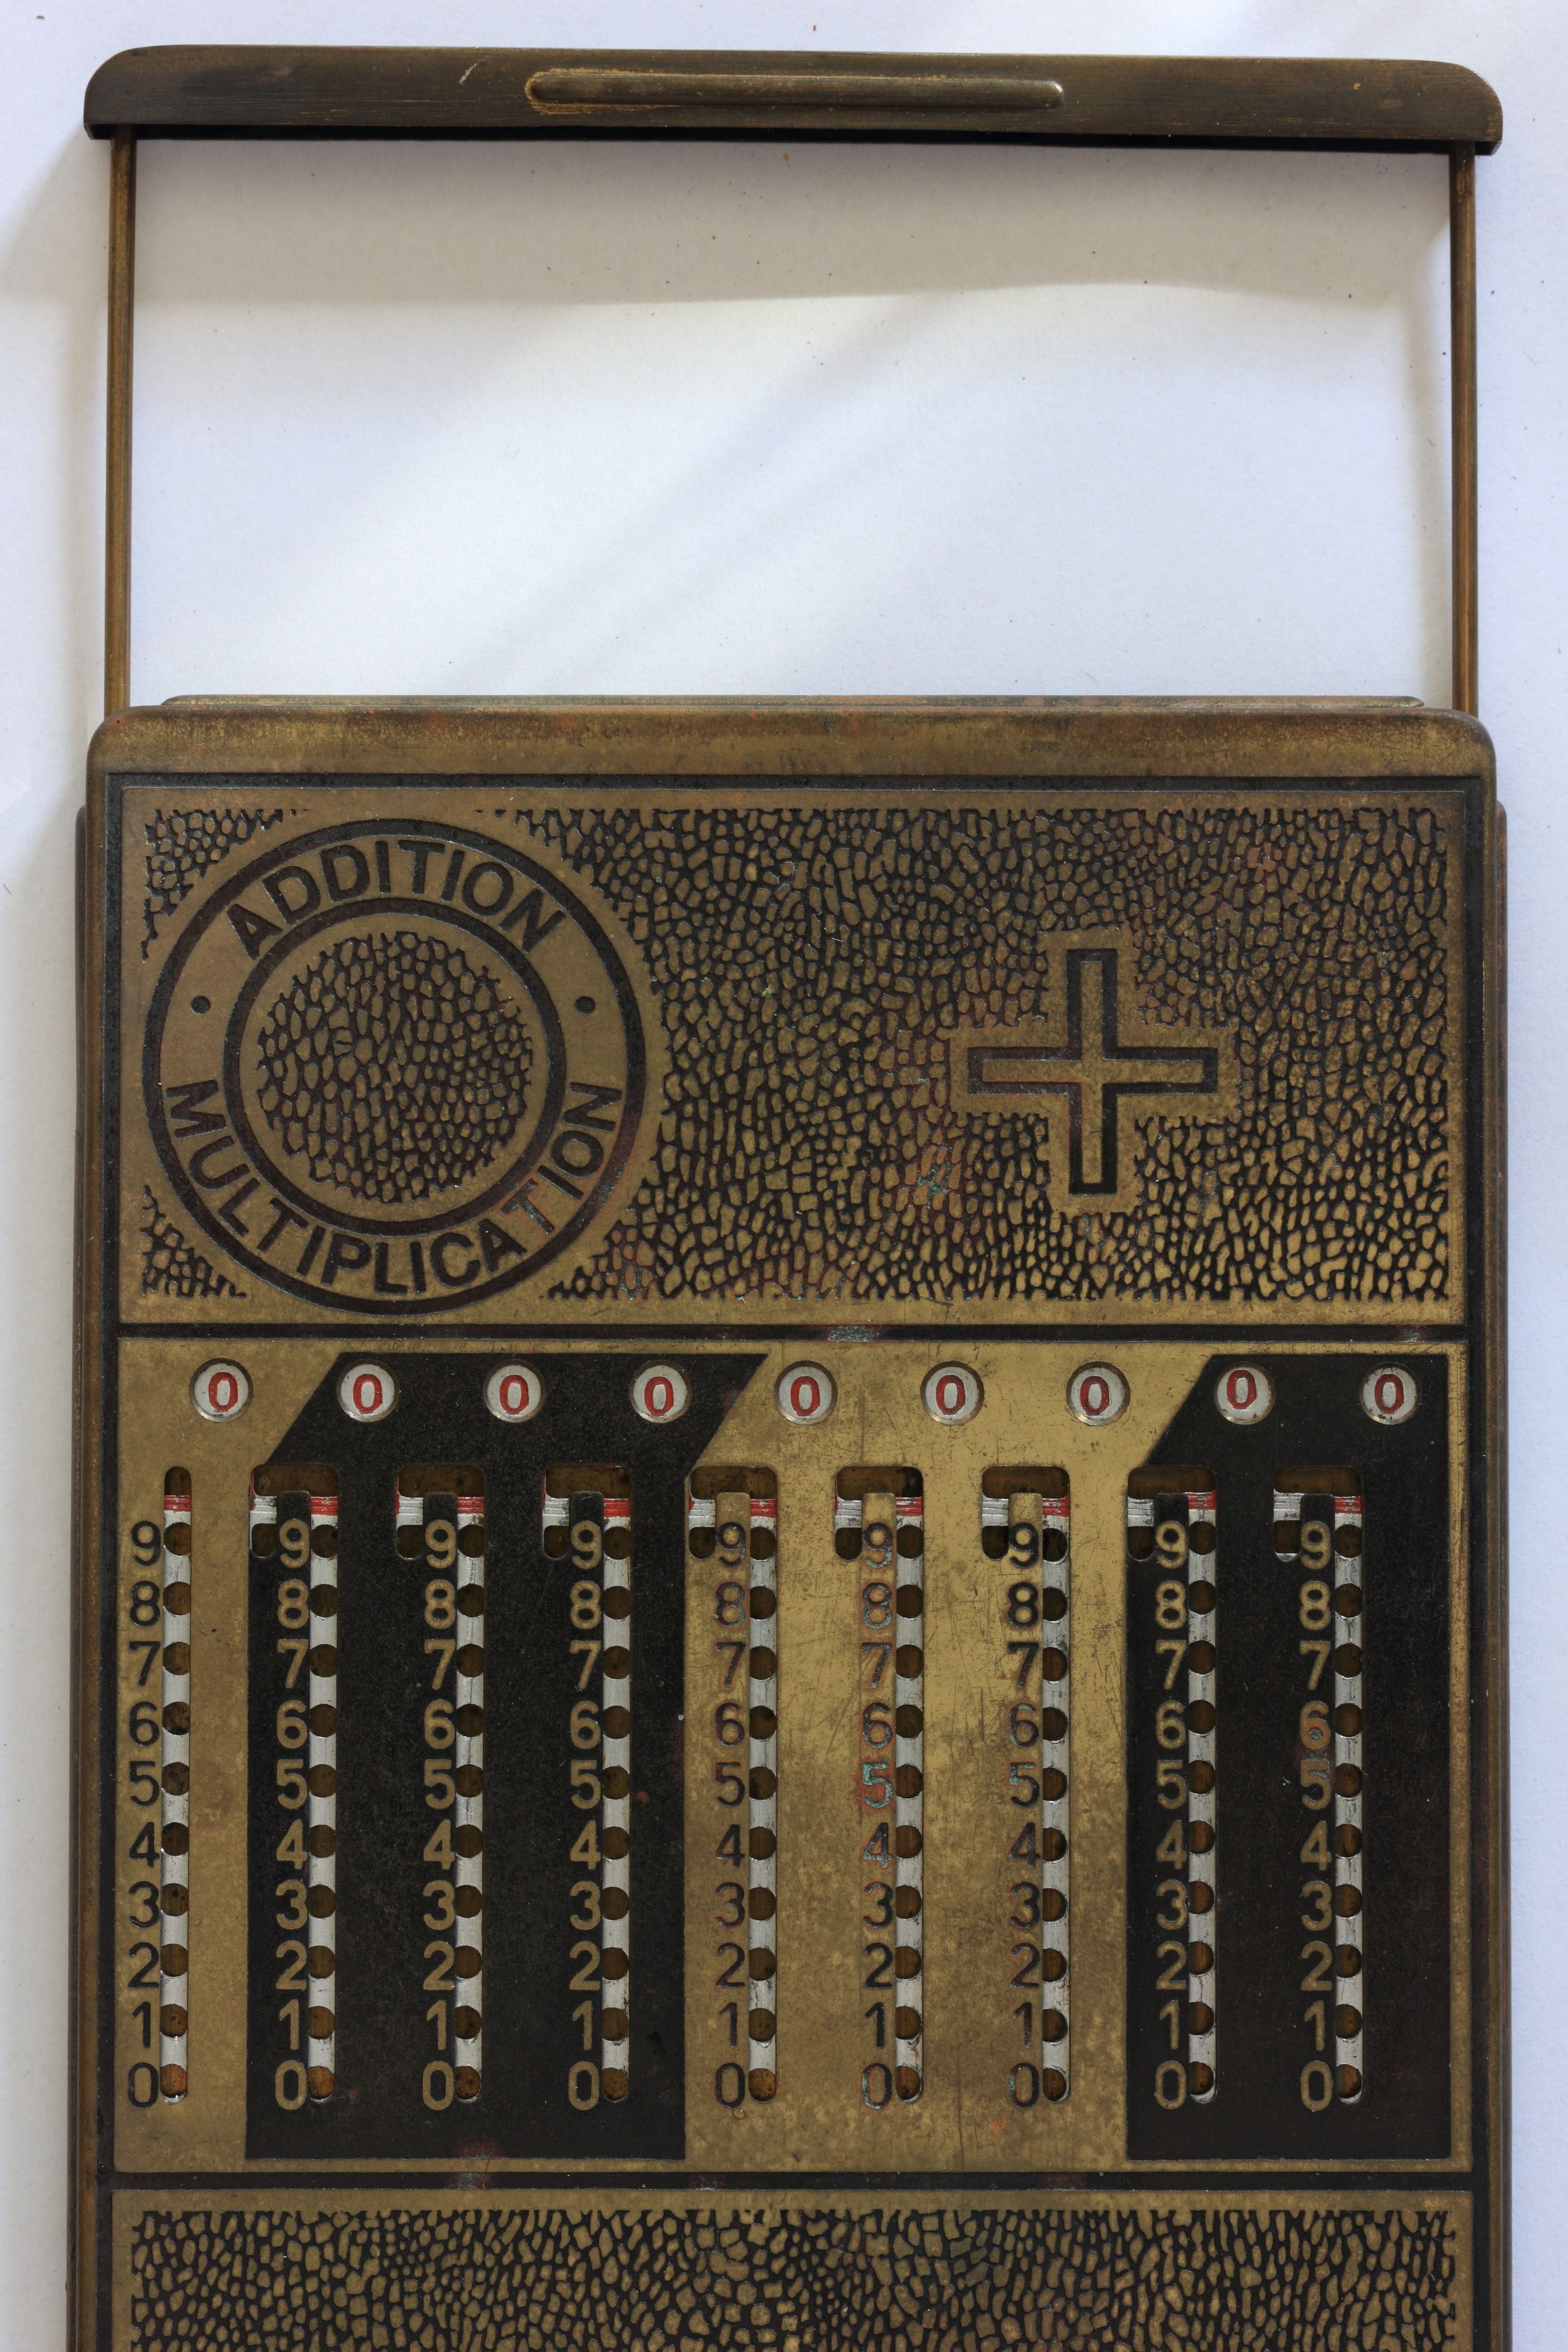 gold classic calculator